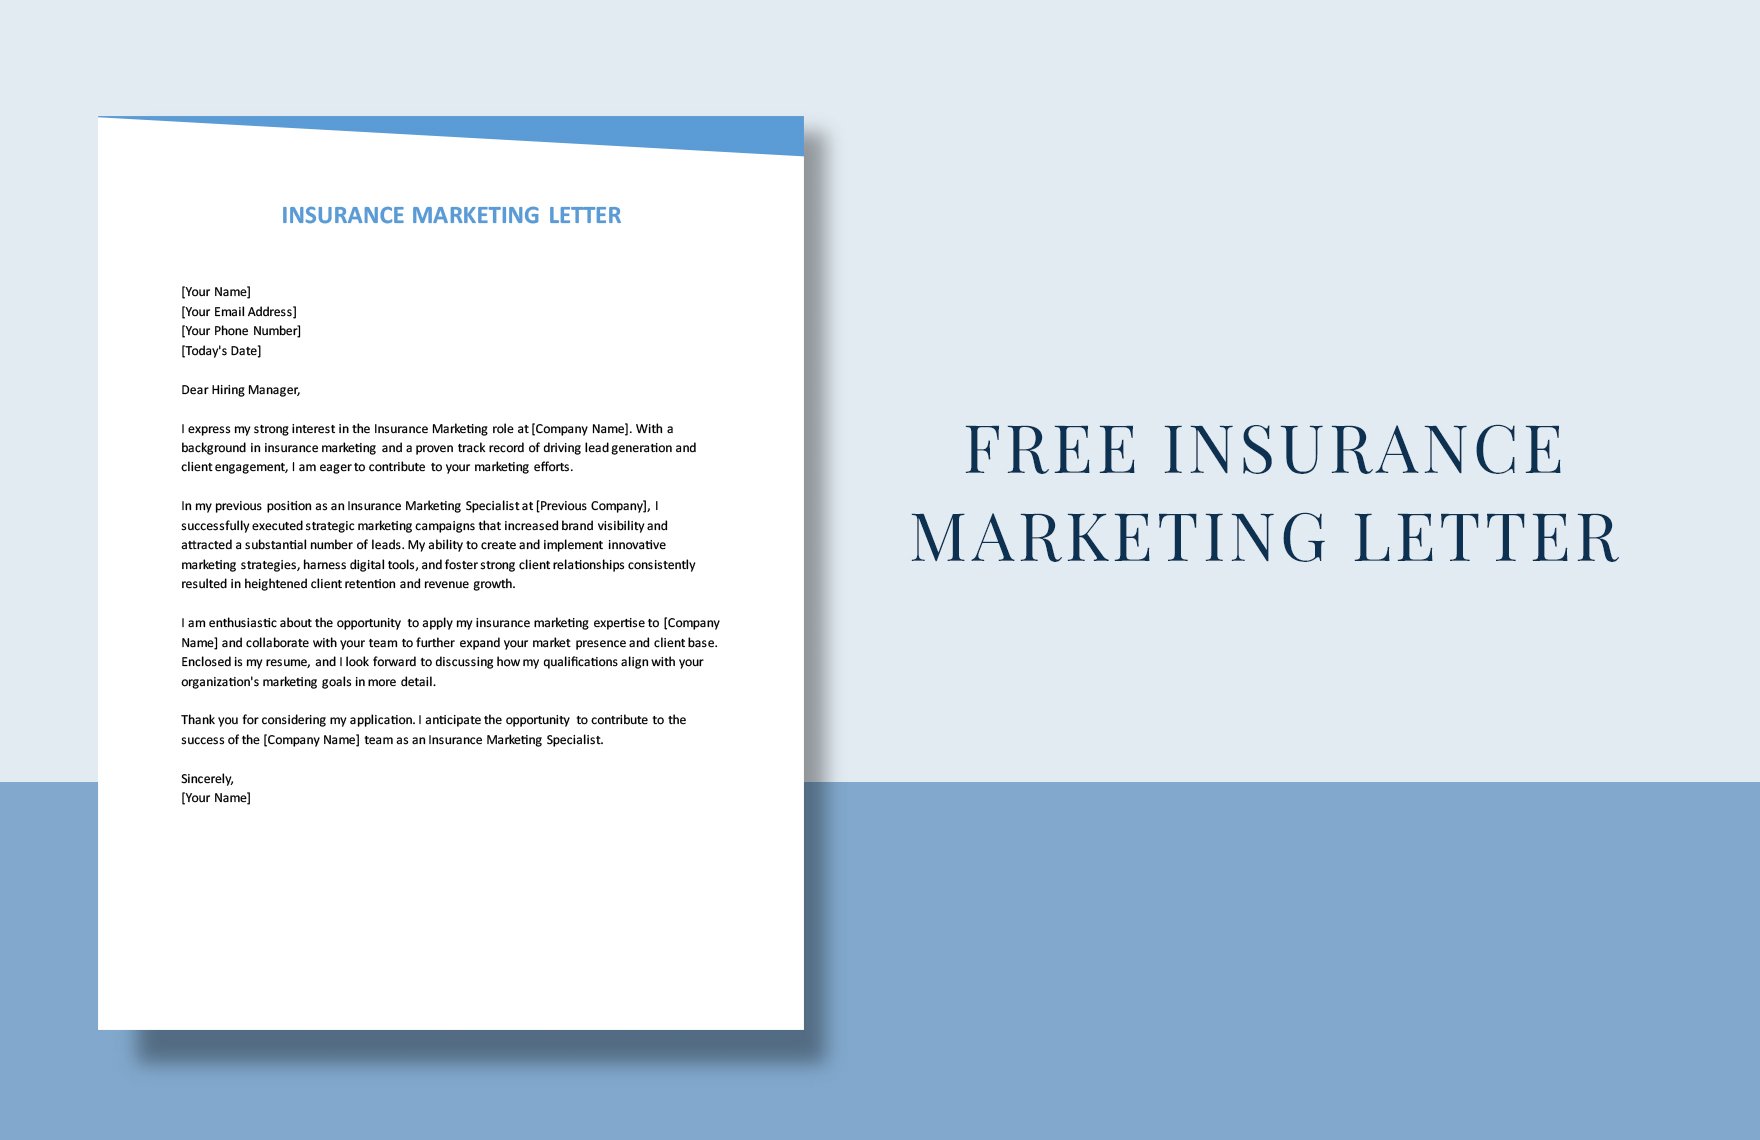 Insurance Marketing Letter